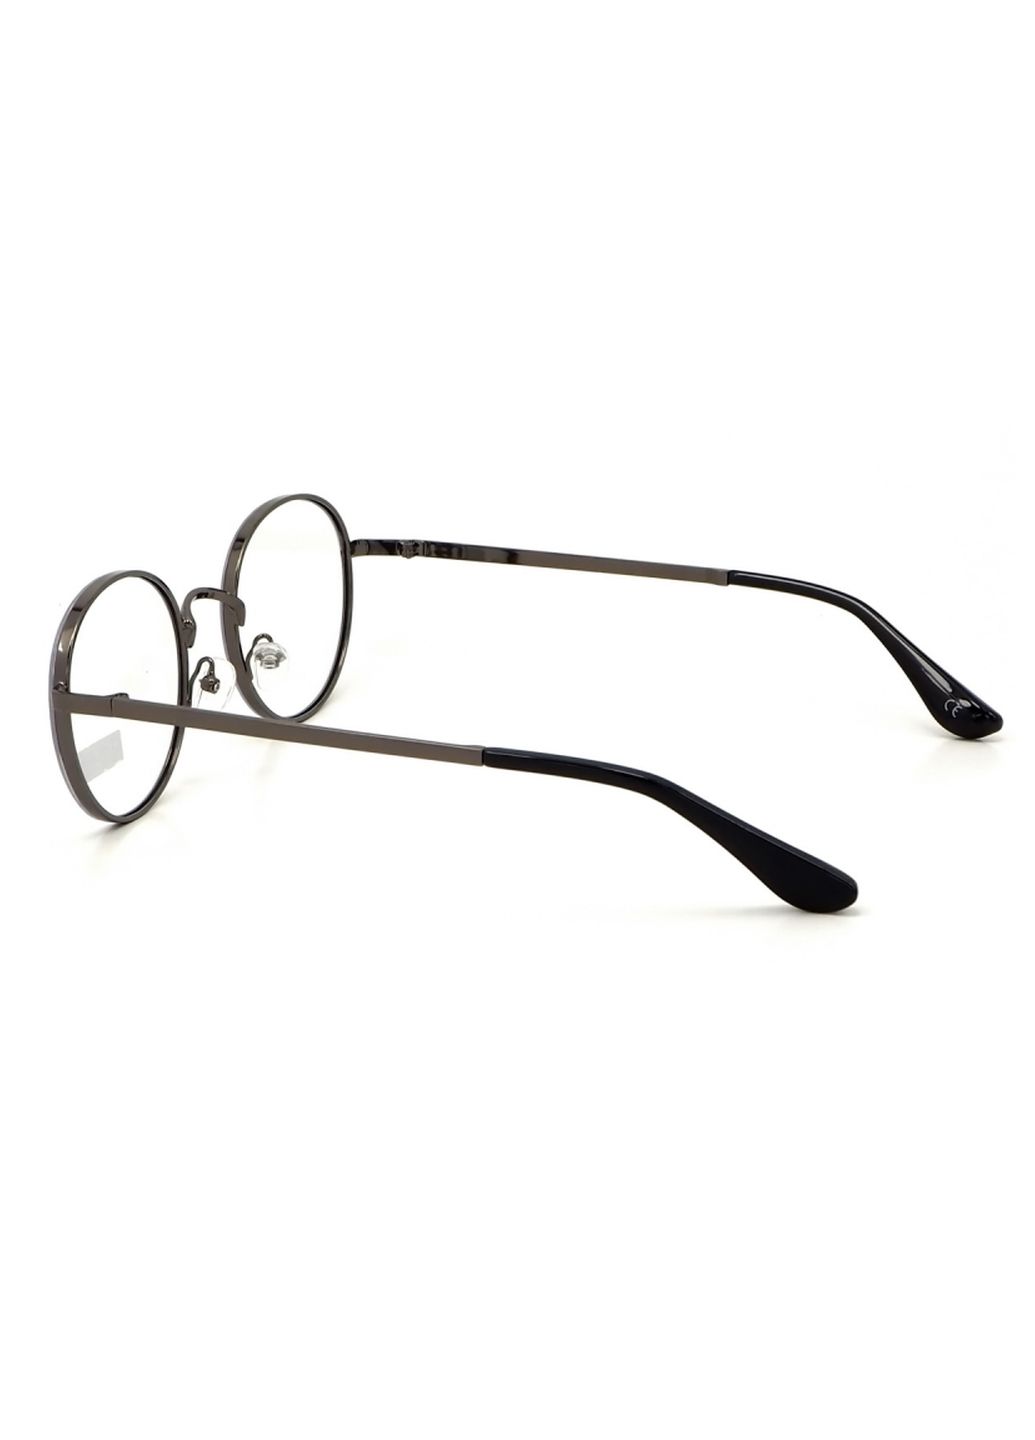 Купить Очки для работы за компьютером Cooper Glasses в серой оправе 124014 в интернет-магазине